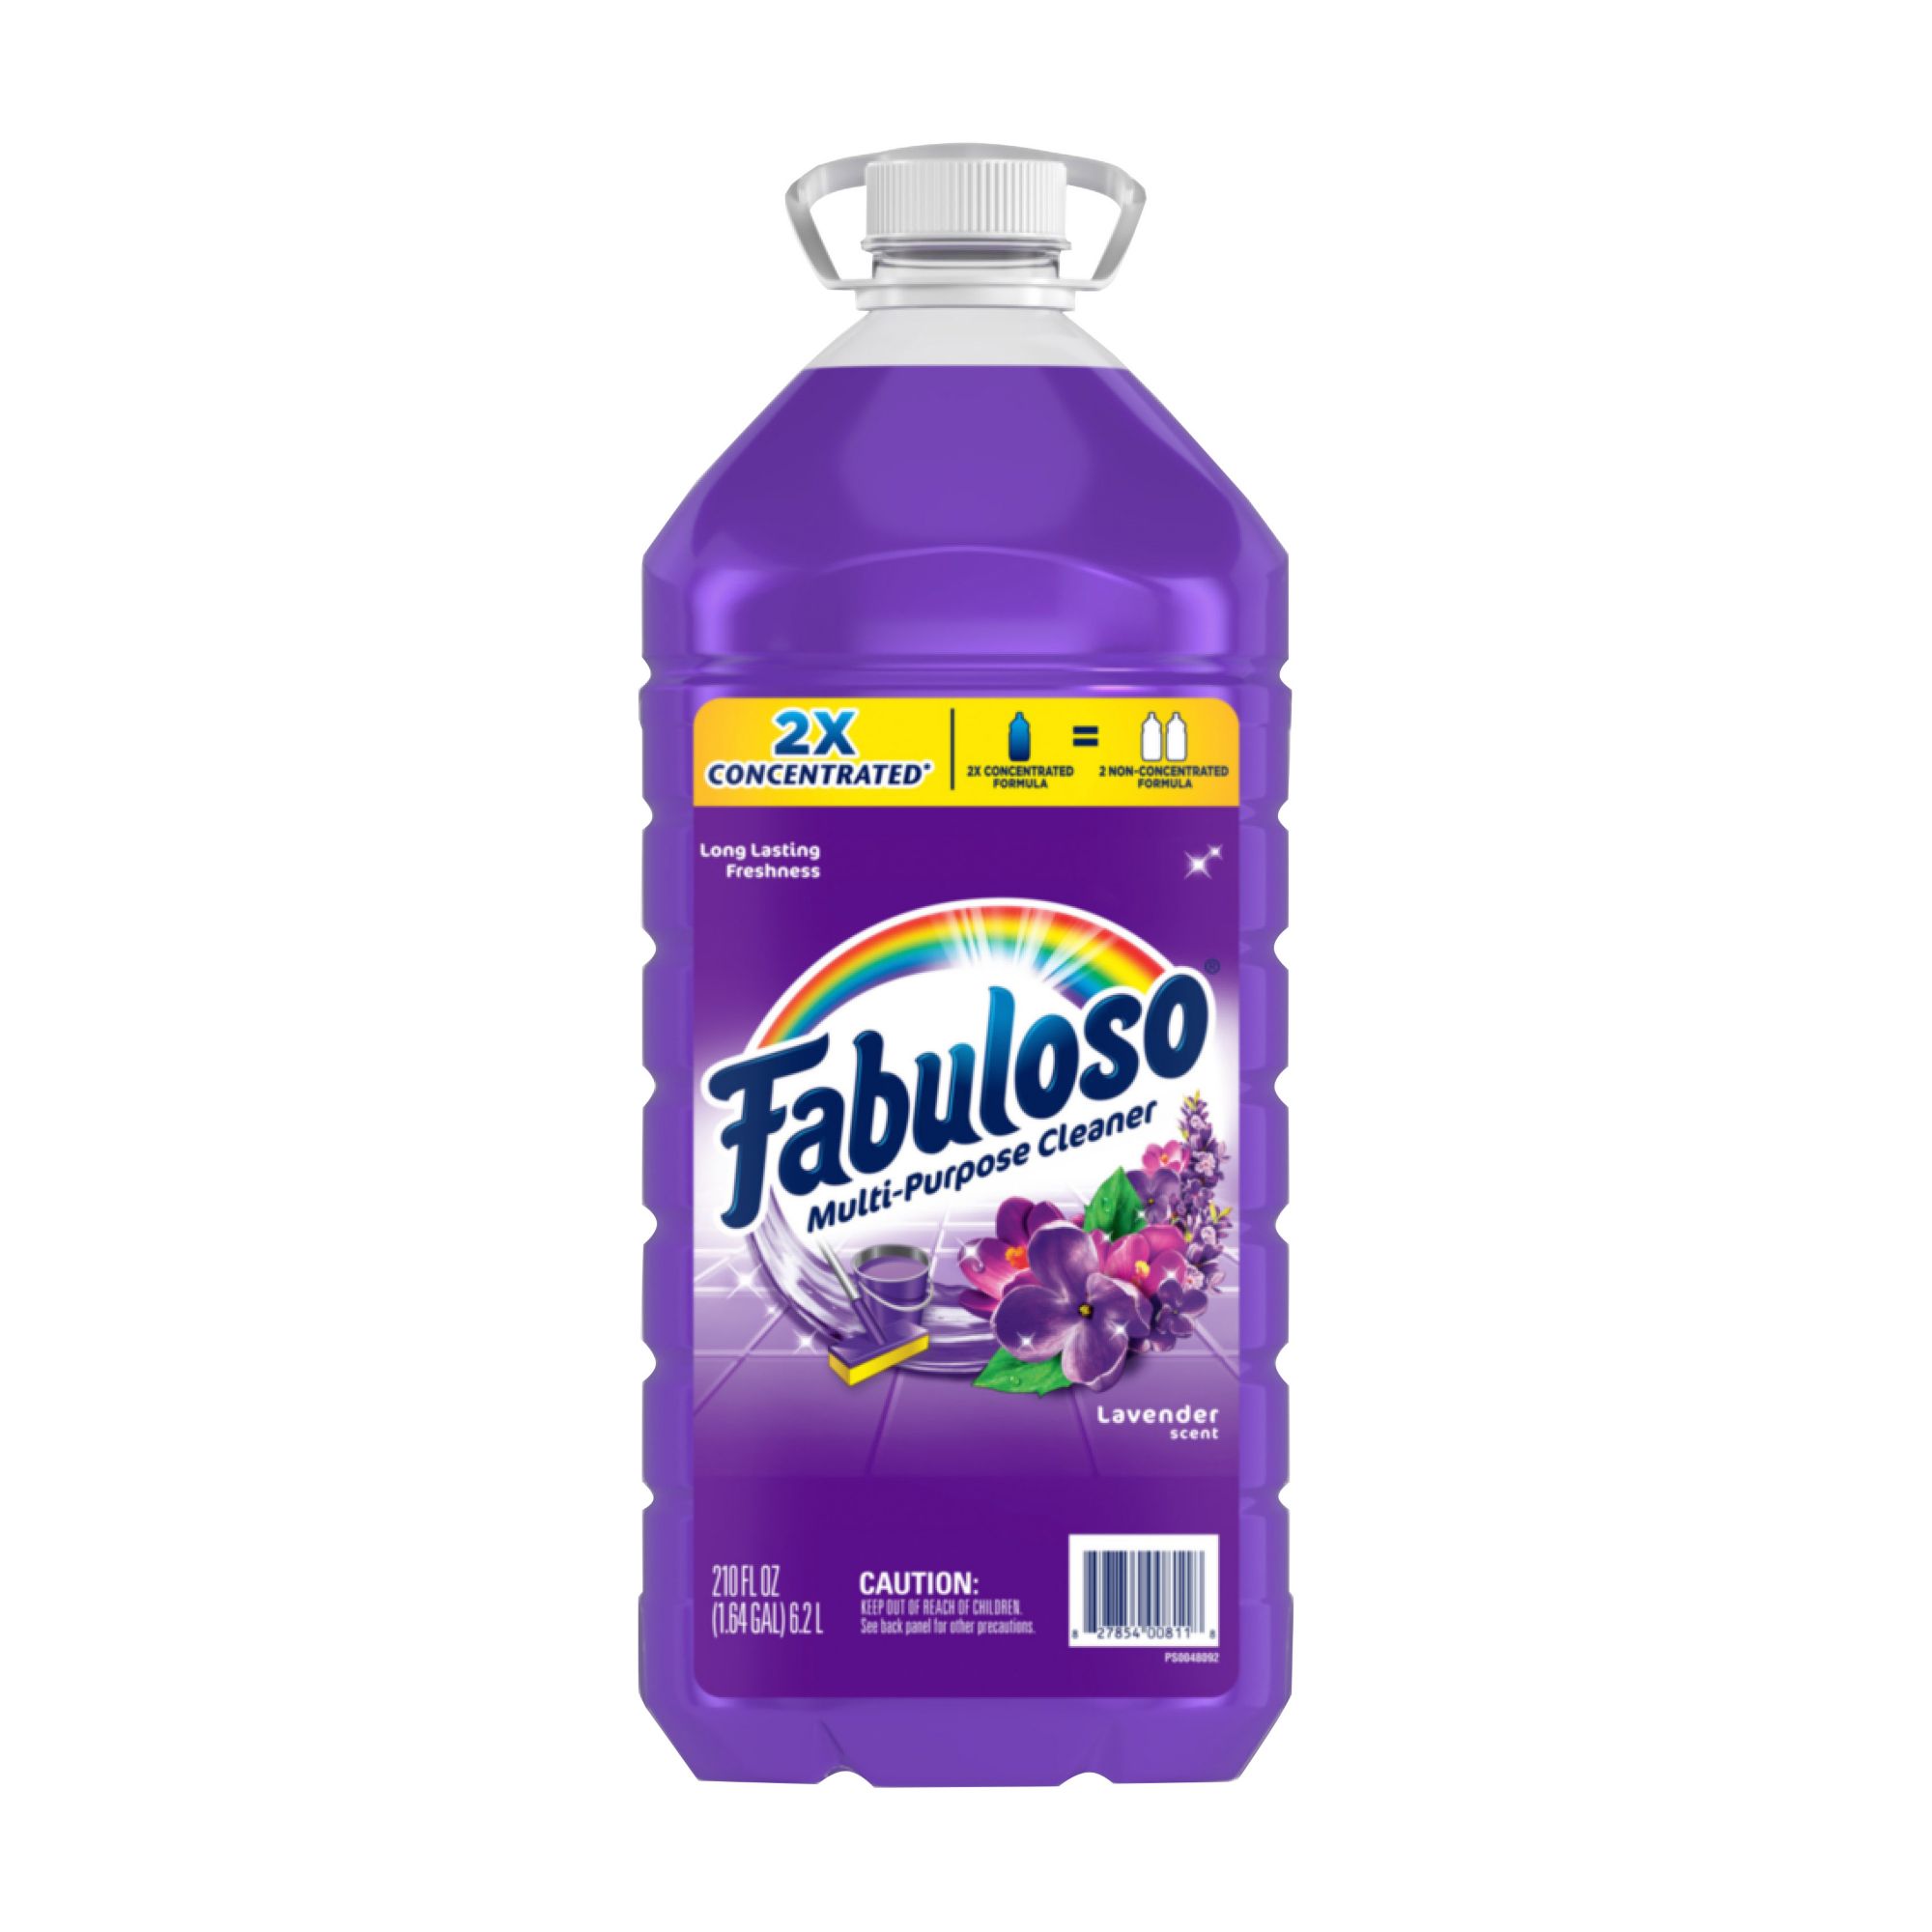 Fabuloso 2X Concentrated Multi-Purpose Cleaner, 210 fl. oz. - Lavender